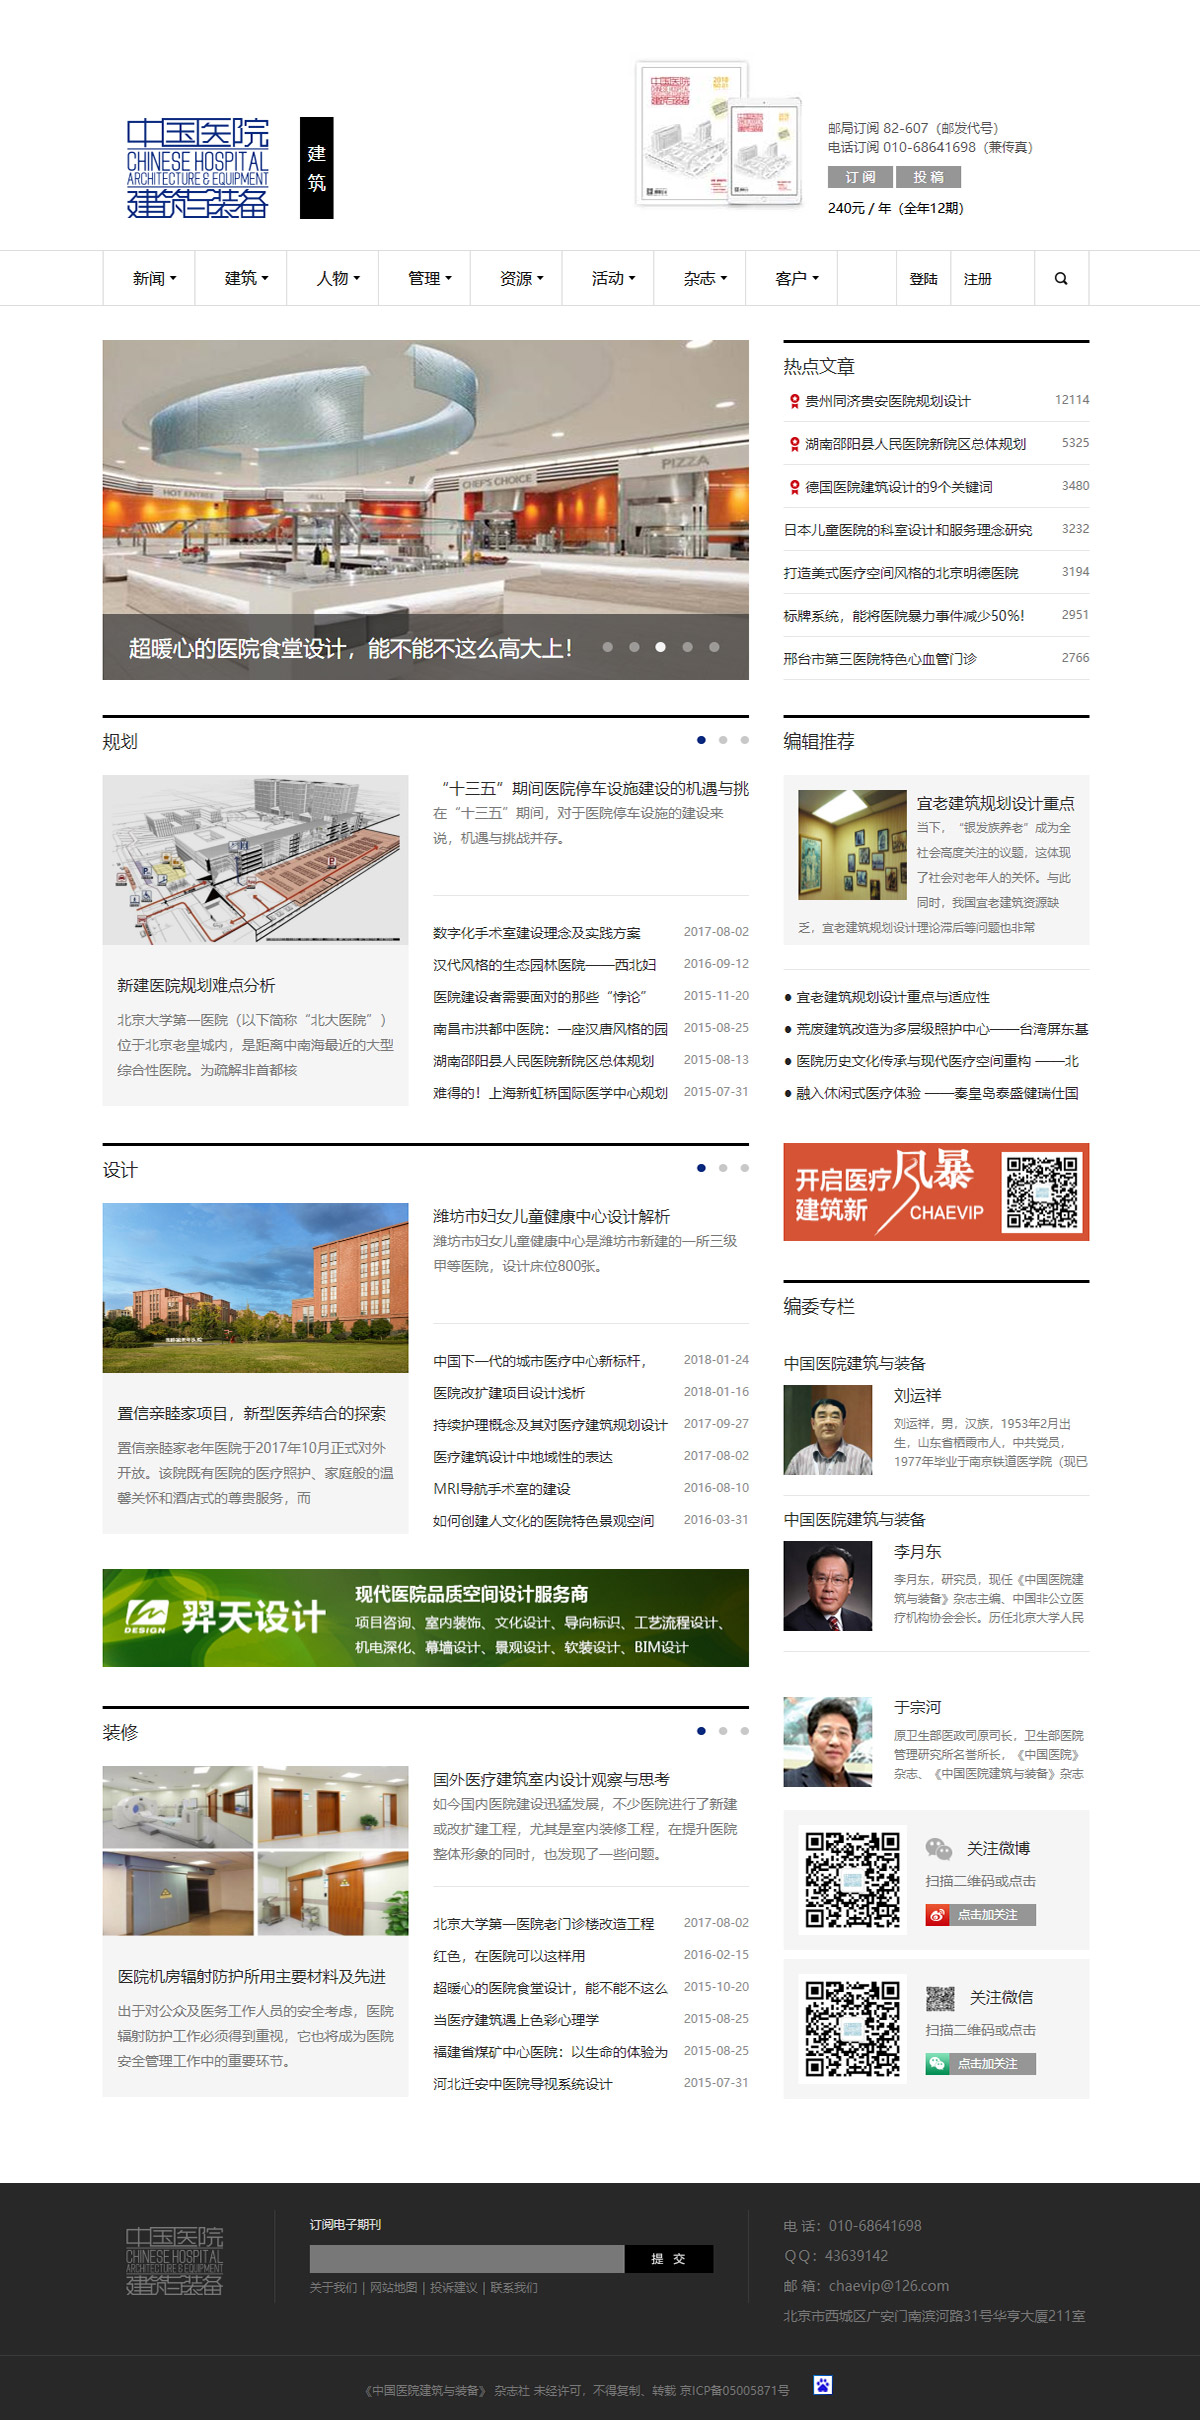 《中国医院建筑与装备》杂志社-建筑频道页